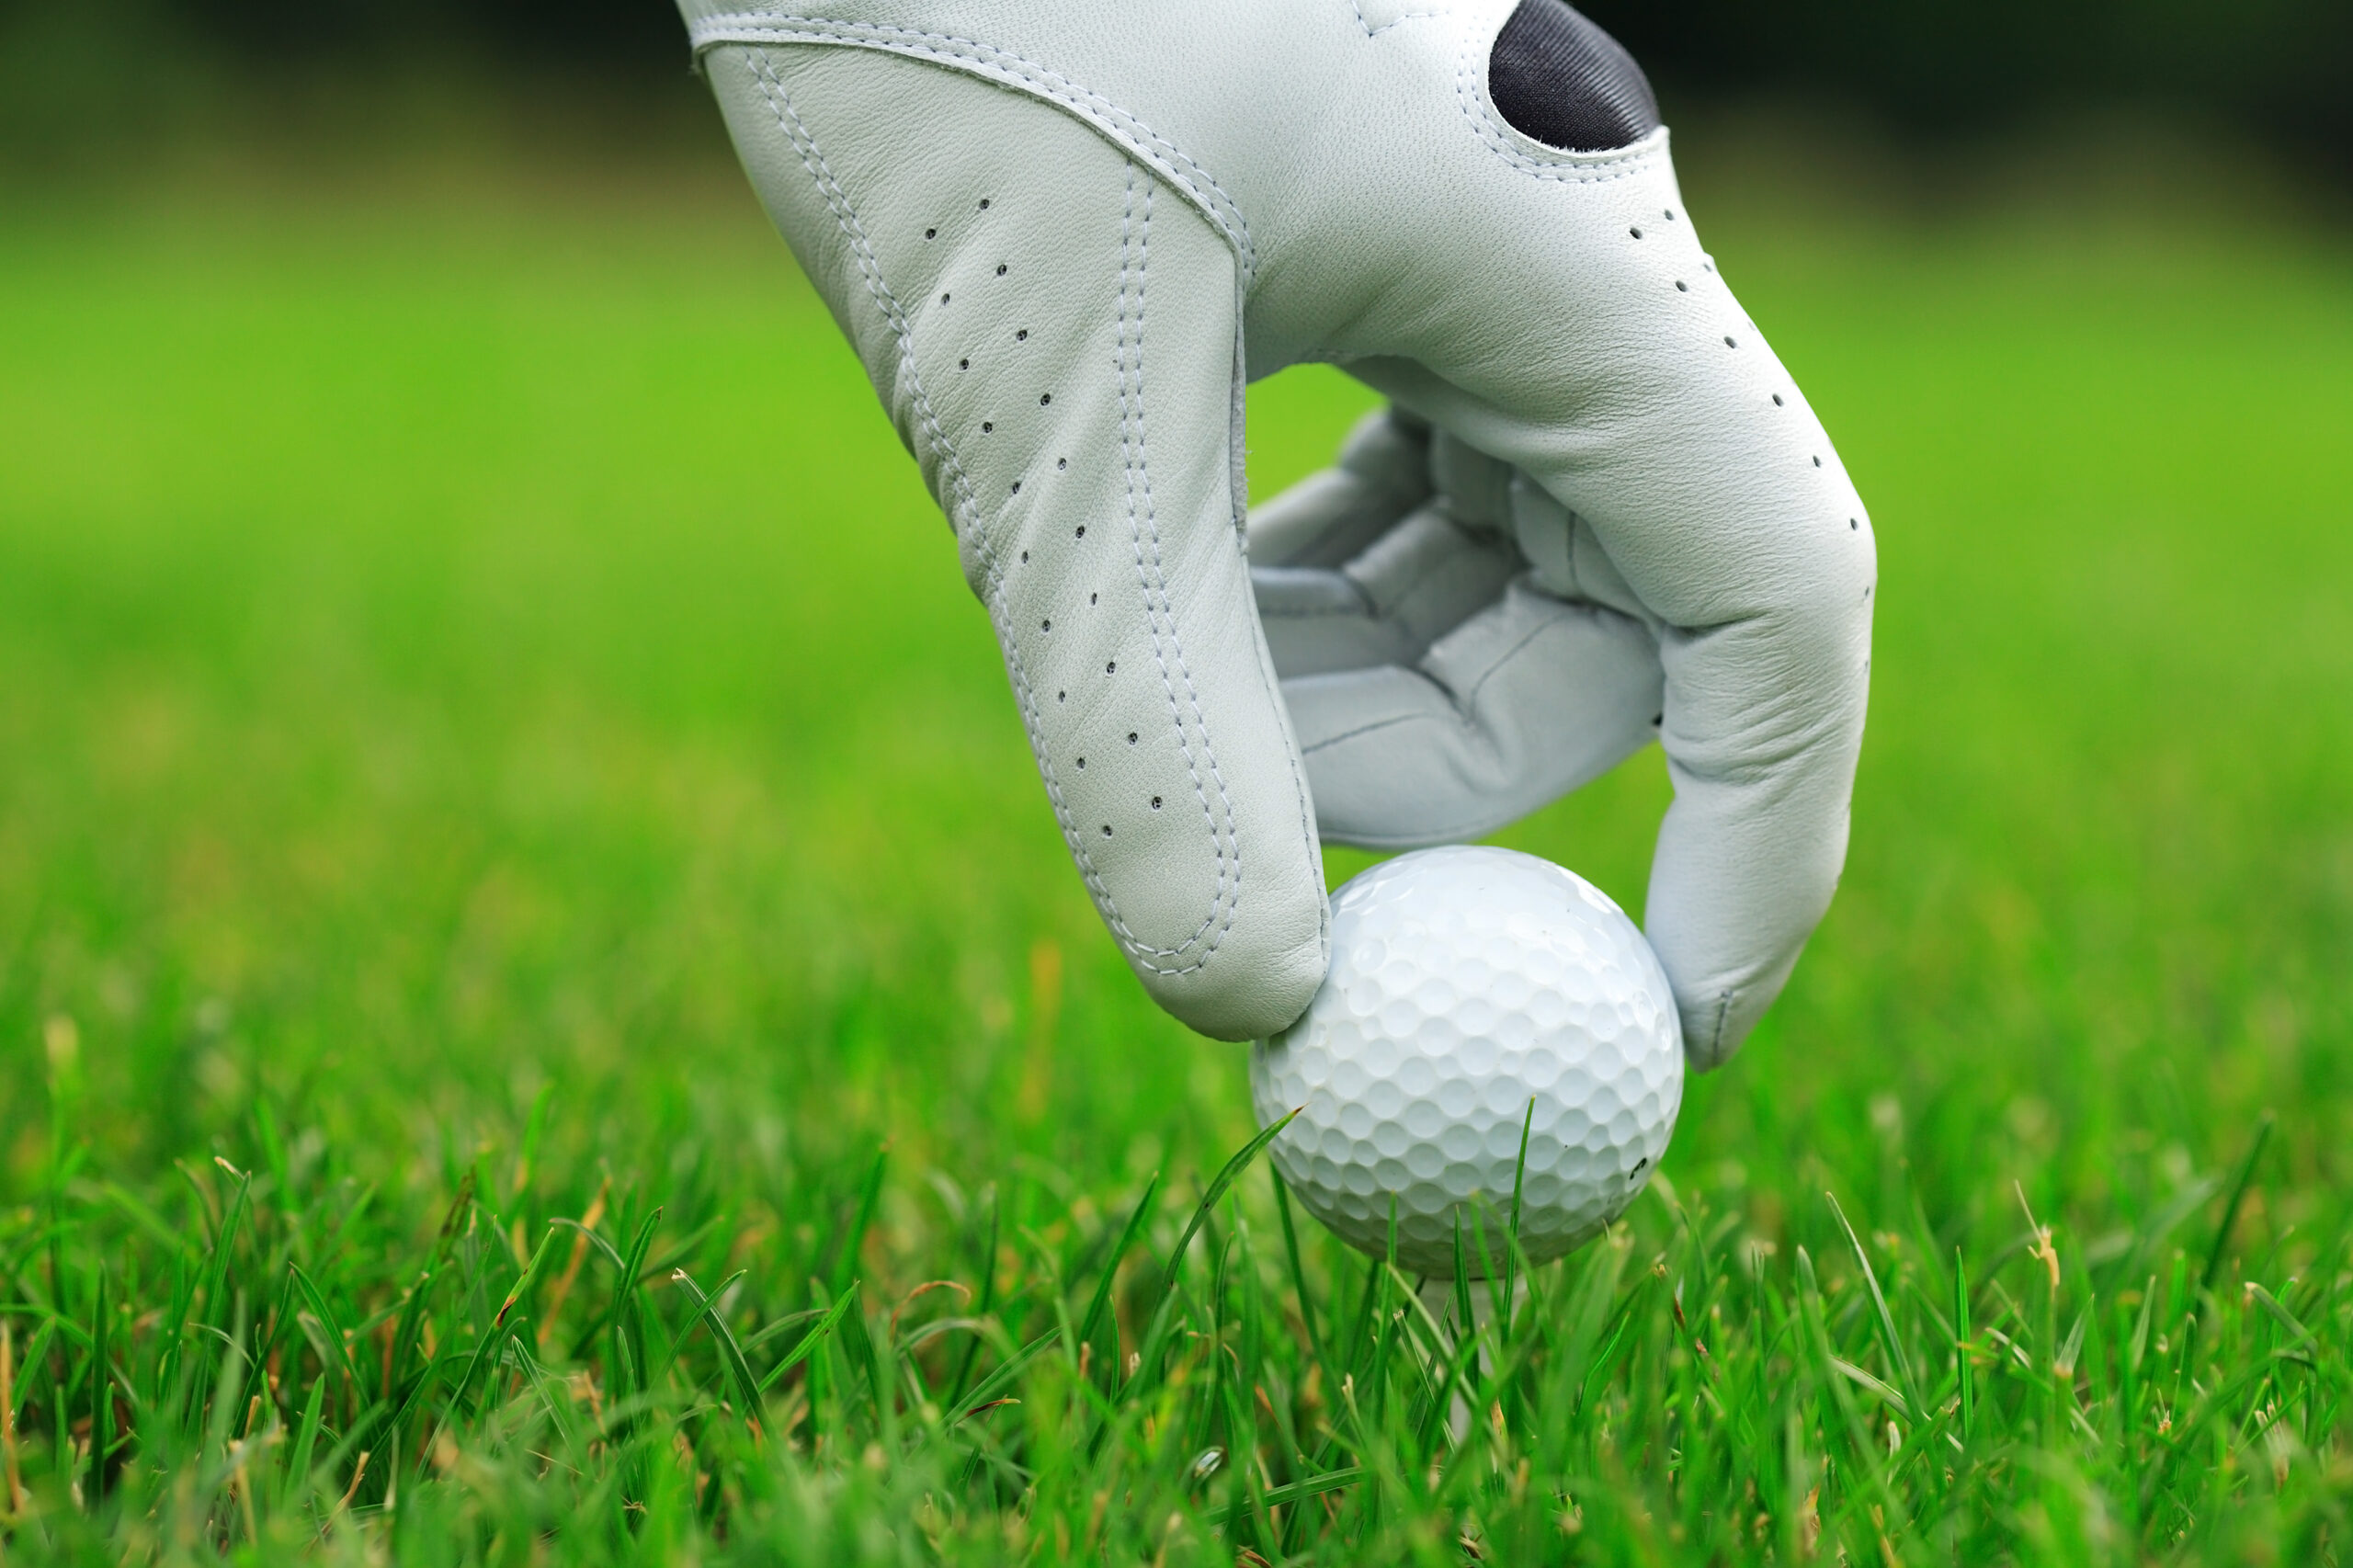 A golf glove is on a hand teeing up a golf ball.